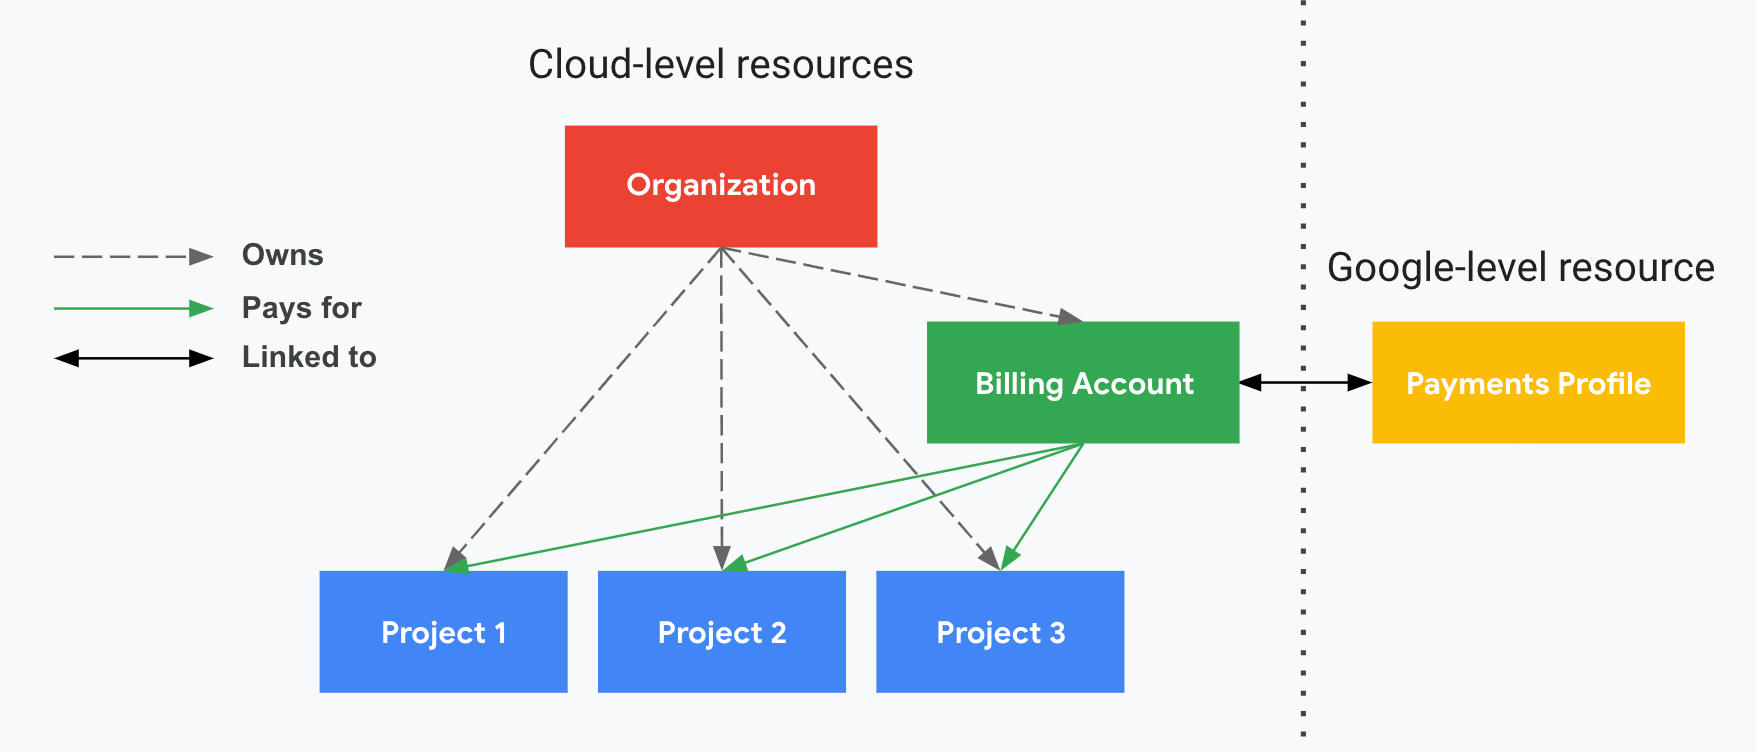 显示了项目与 Cloud Billing 账号和 Google 付款资料之间的关系。一侧显示了您的 Google Cloud 级资源（Cloud Billing 账号和关联项目），另一侧显示了您的 Google 级资源（Google 付款资料），两侧由垂直虚线分隔。您的项目由您的 Cloud Billing 账号支付，该账号已与 Google 付款资料关联。